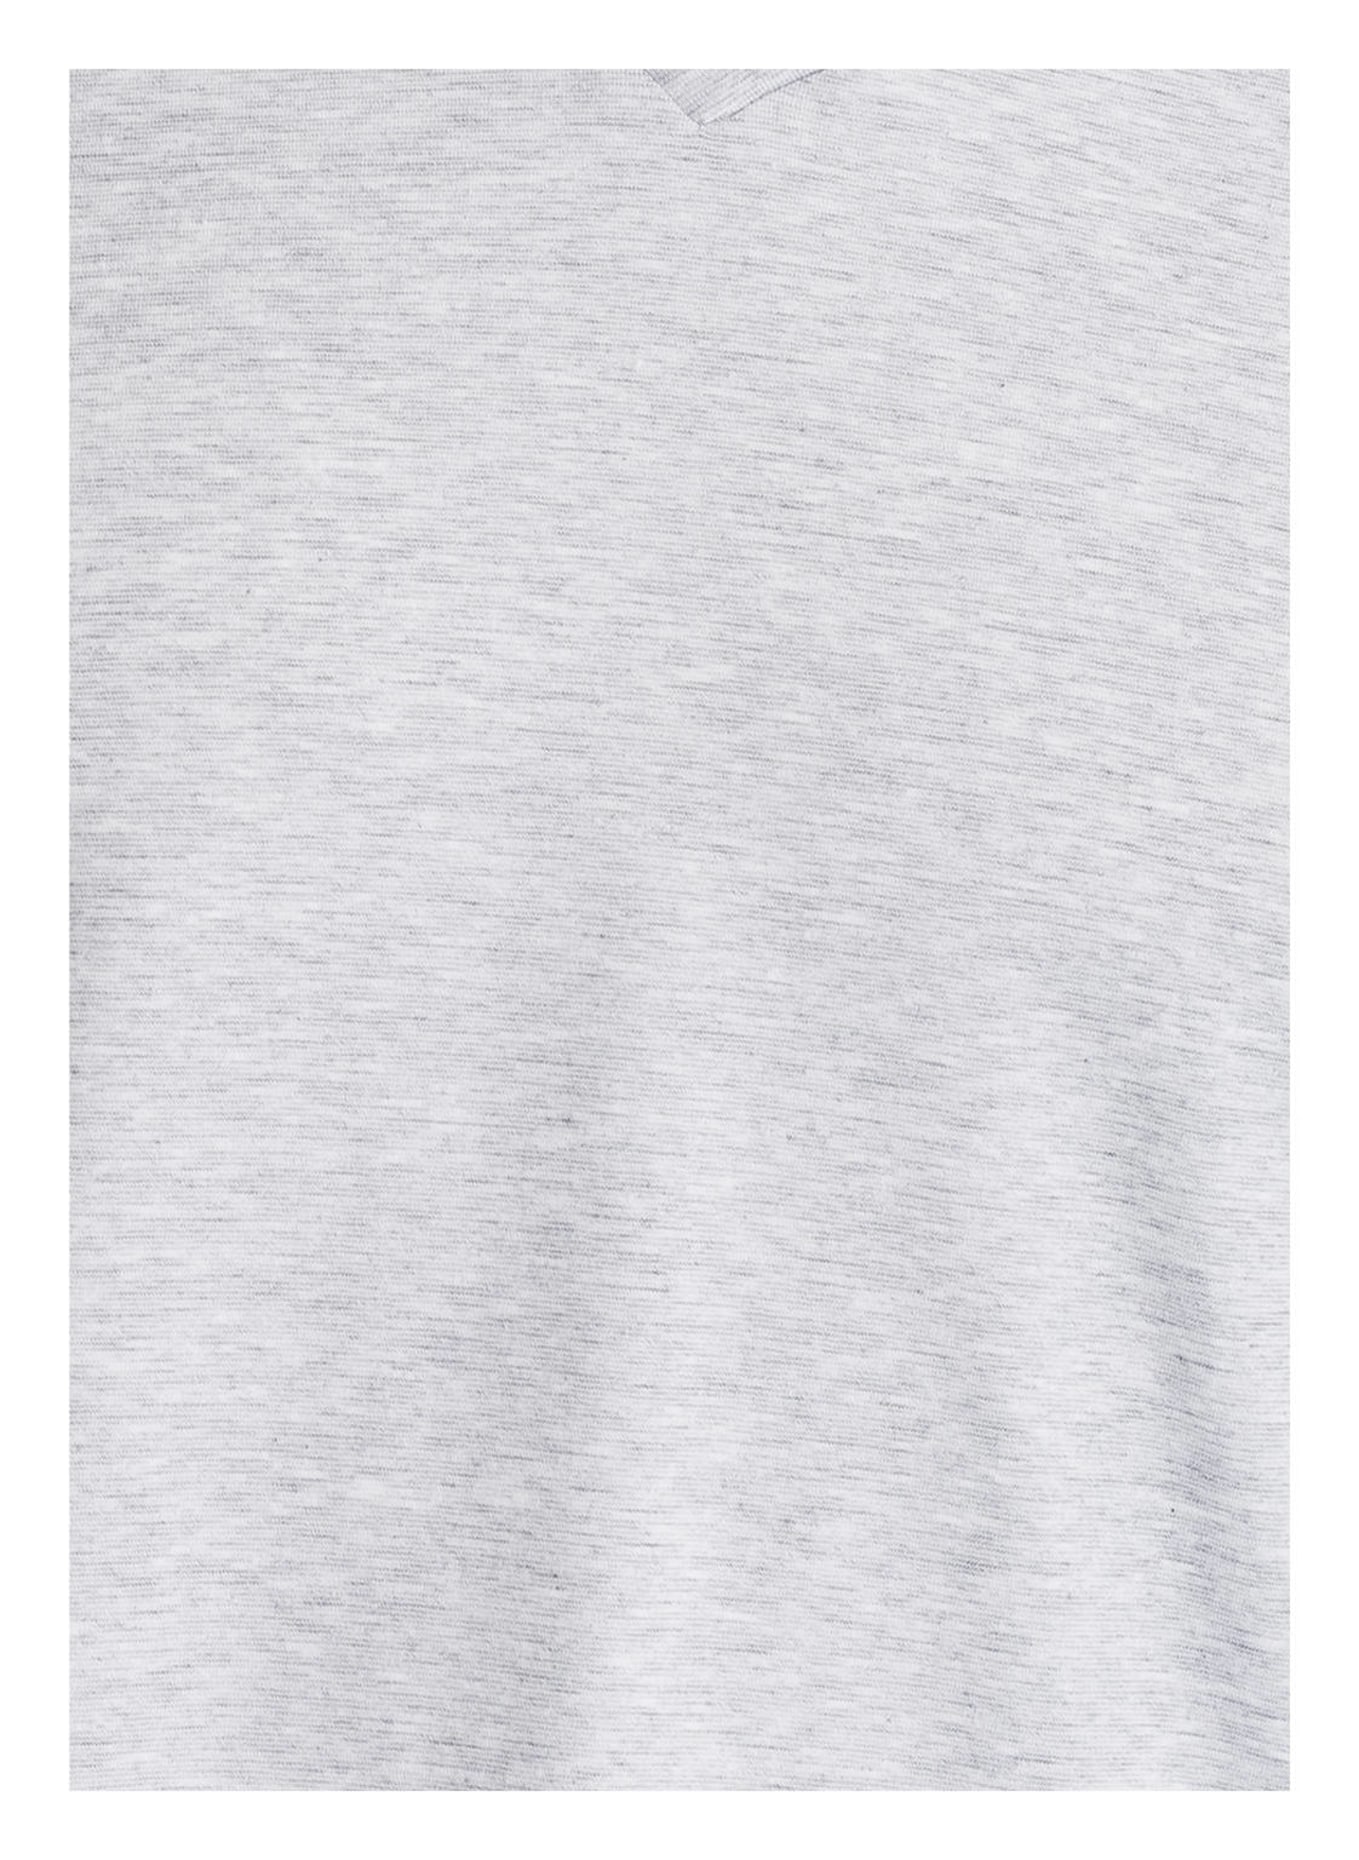 mey Lounge shirt DRY COTTON COLOUR series, Color: GRAY MÉLANGE (Image 3)